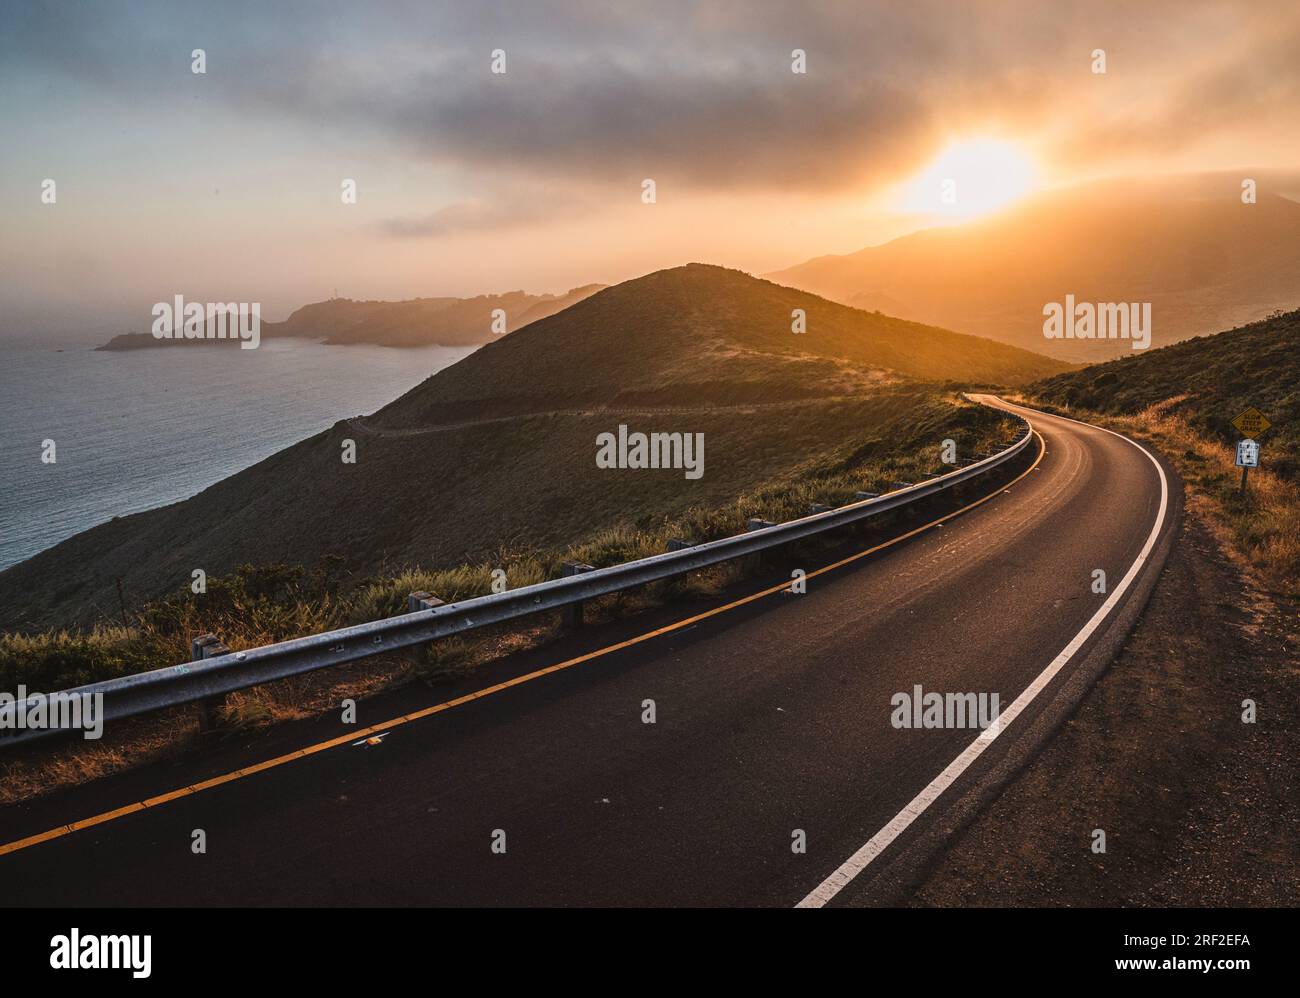 El sol se pone sobre la carretera de montaña, Monumento Nacional Marin Headlands Foto de stock